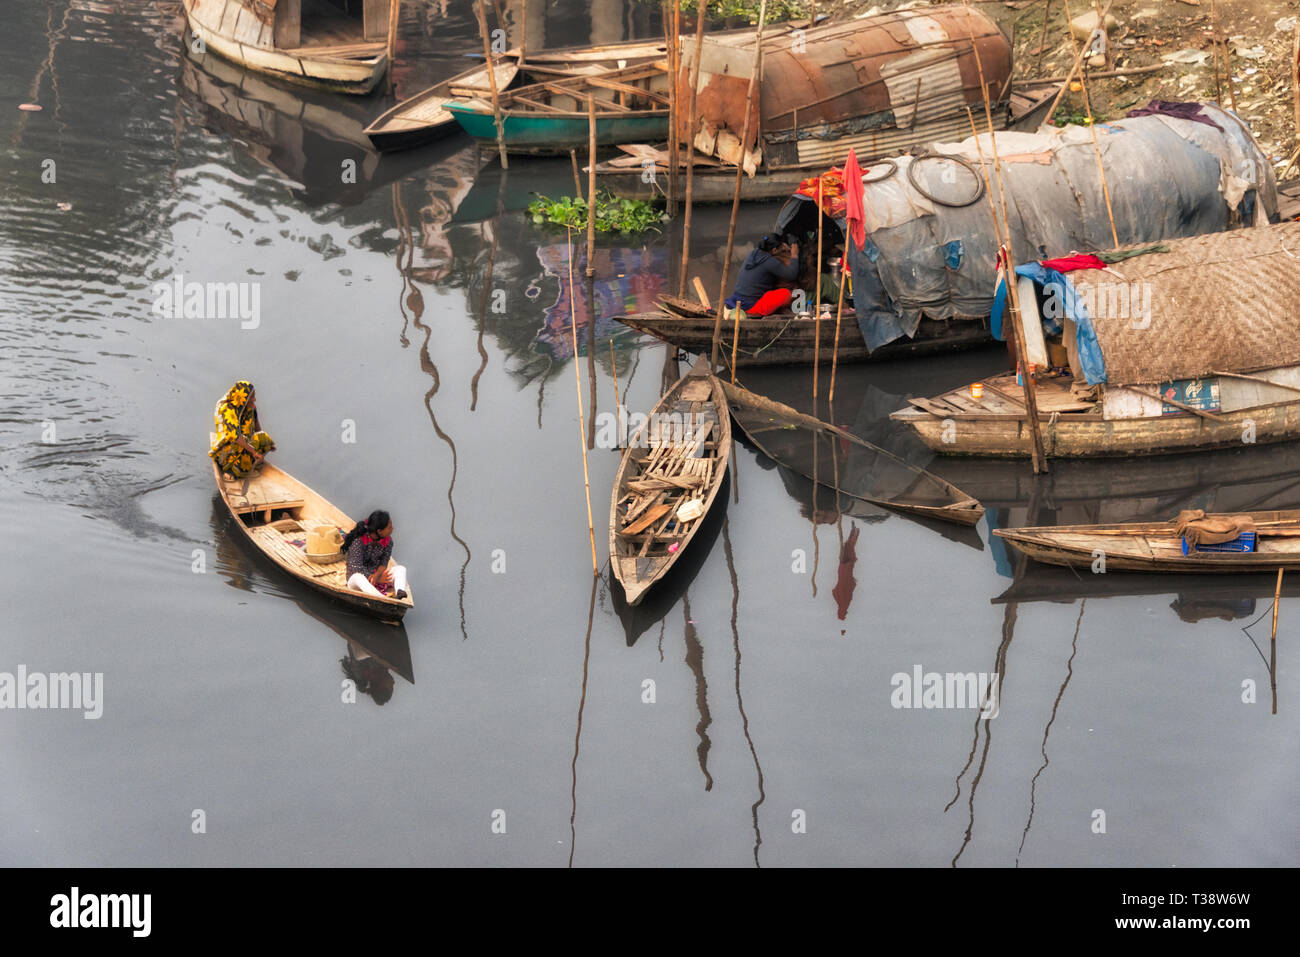 Houseboat on the river, Dhaka, Bangladesh Stock Photo